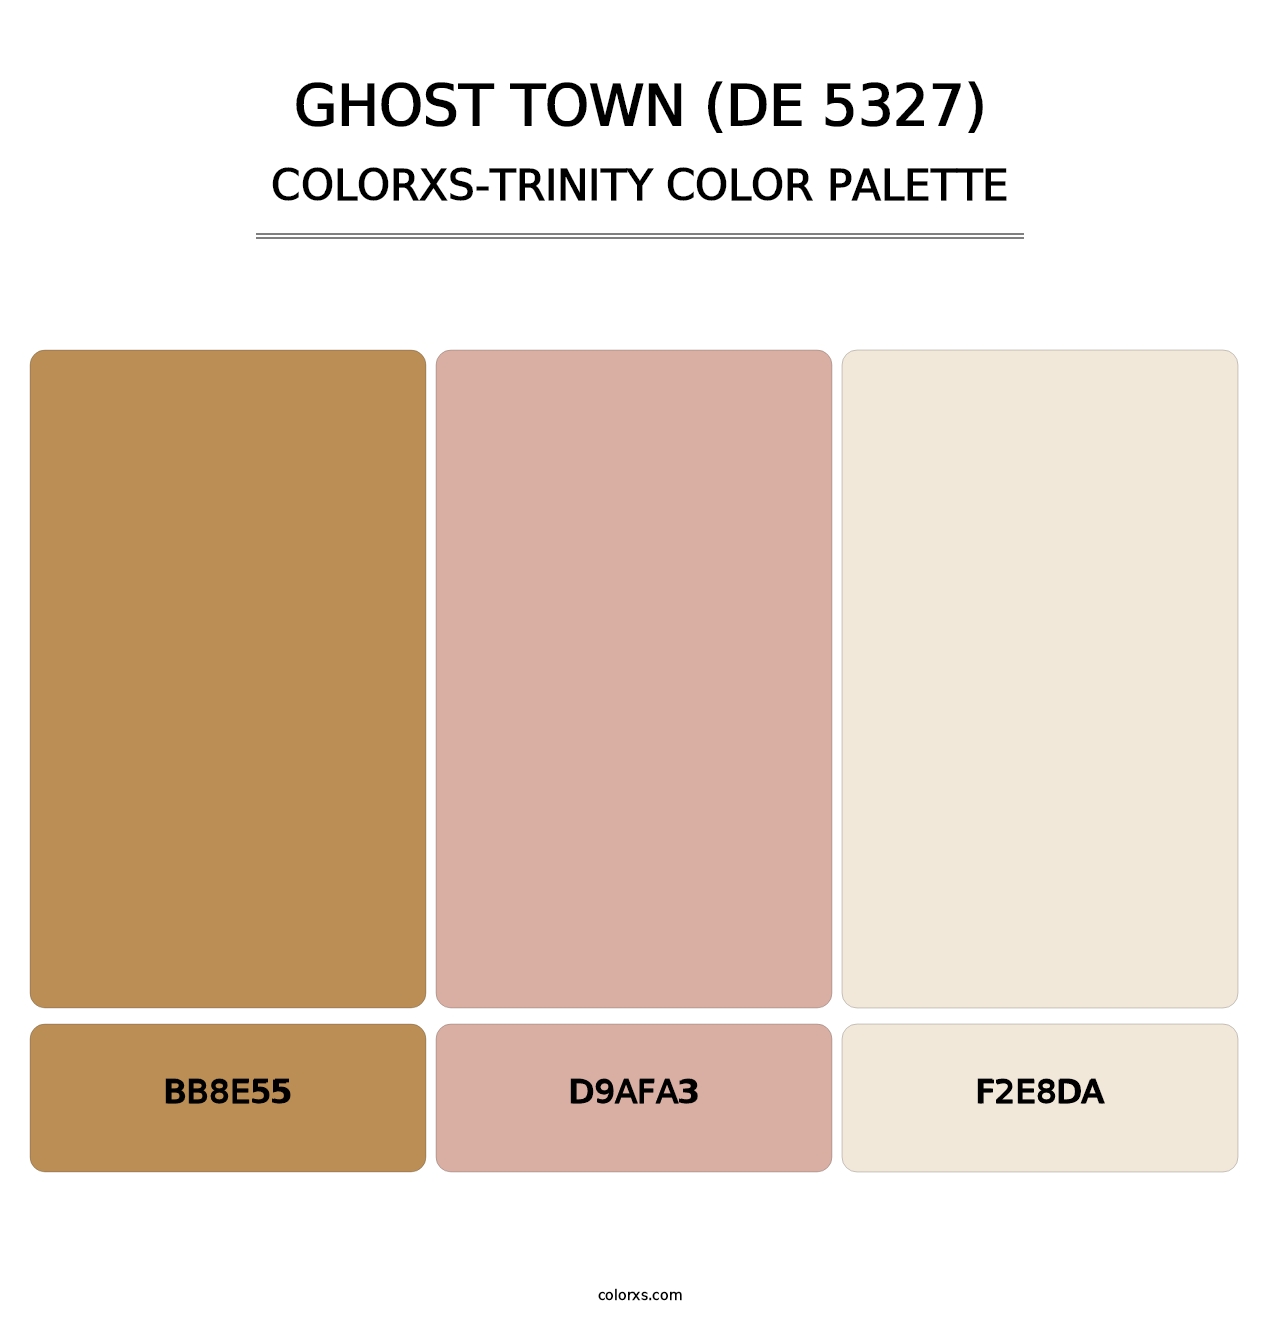 Ghost Town (DE 5327) - Colorxs Trinity Palette